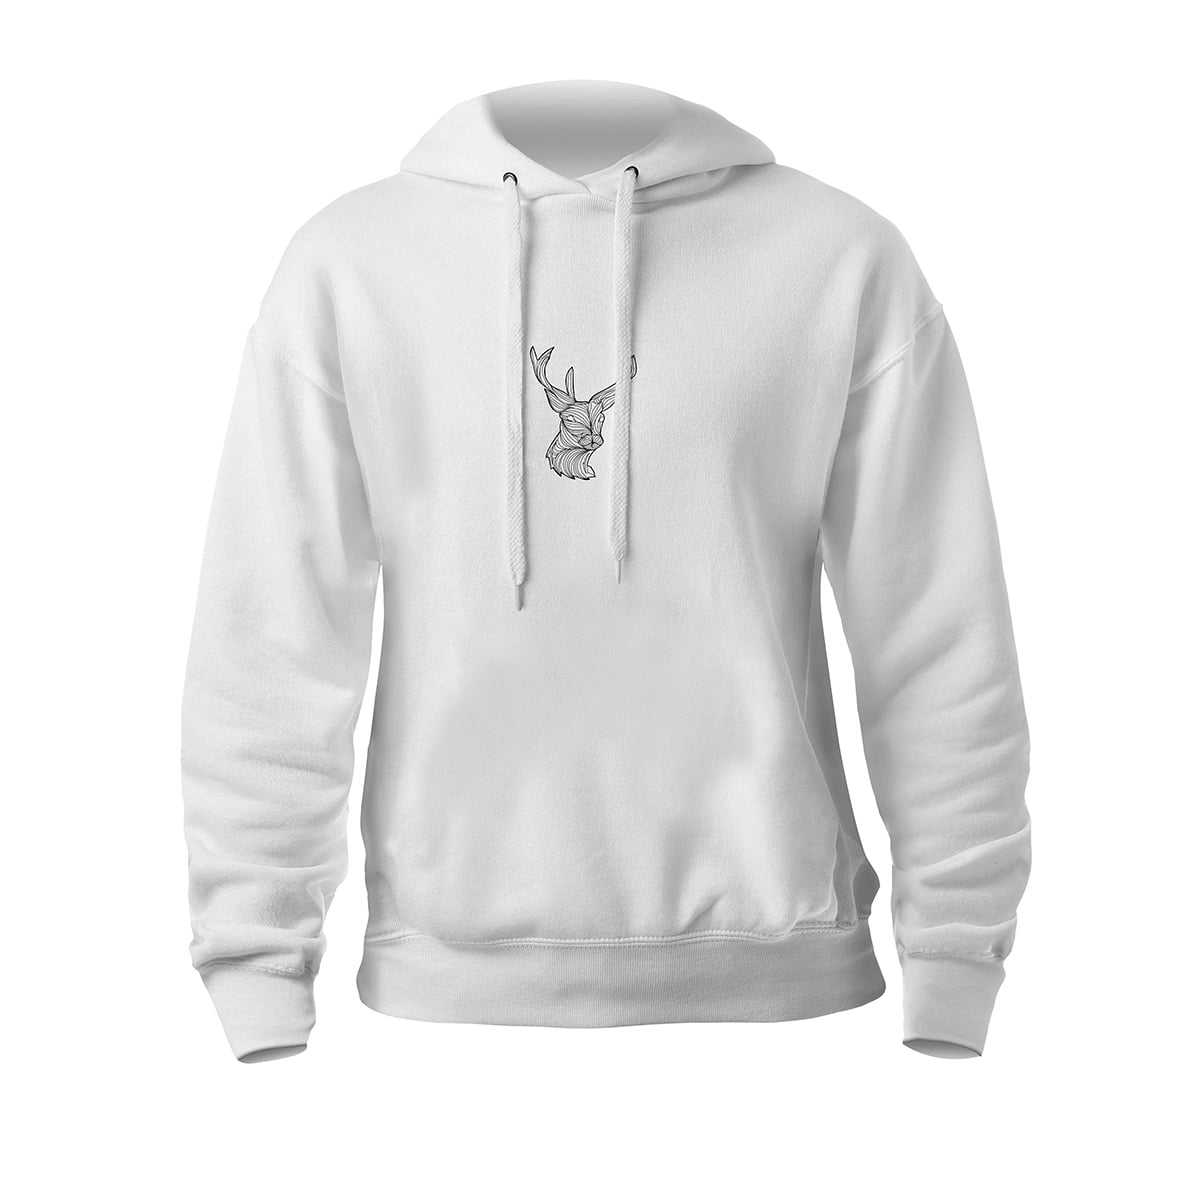 Orjinal geyik mandala siyah fxsca2193c kapsonlu beyaz orta kucuk - geyik mandala unisex kapşonlu sweatshirt - figurex